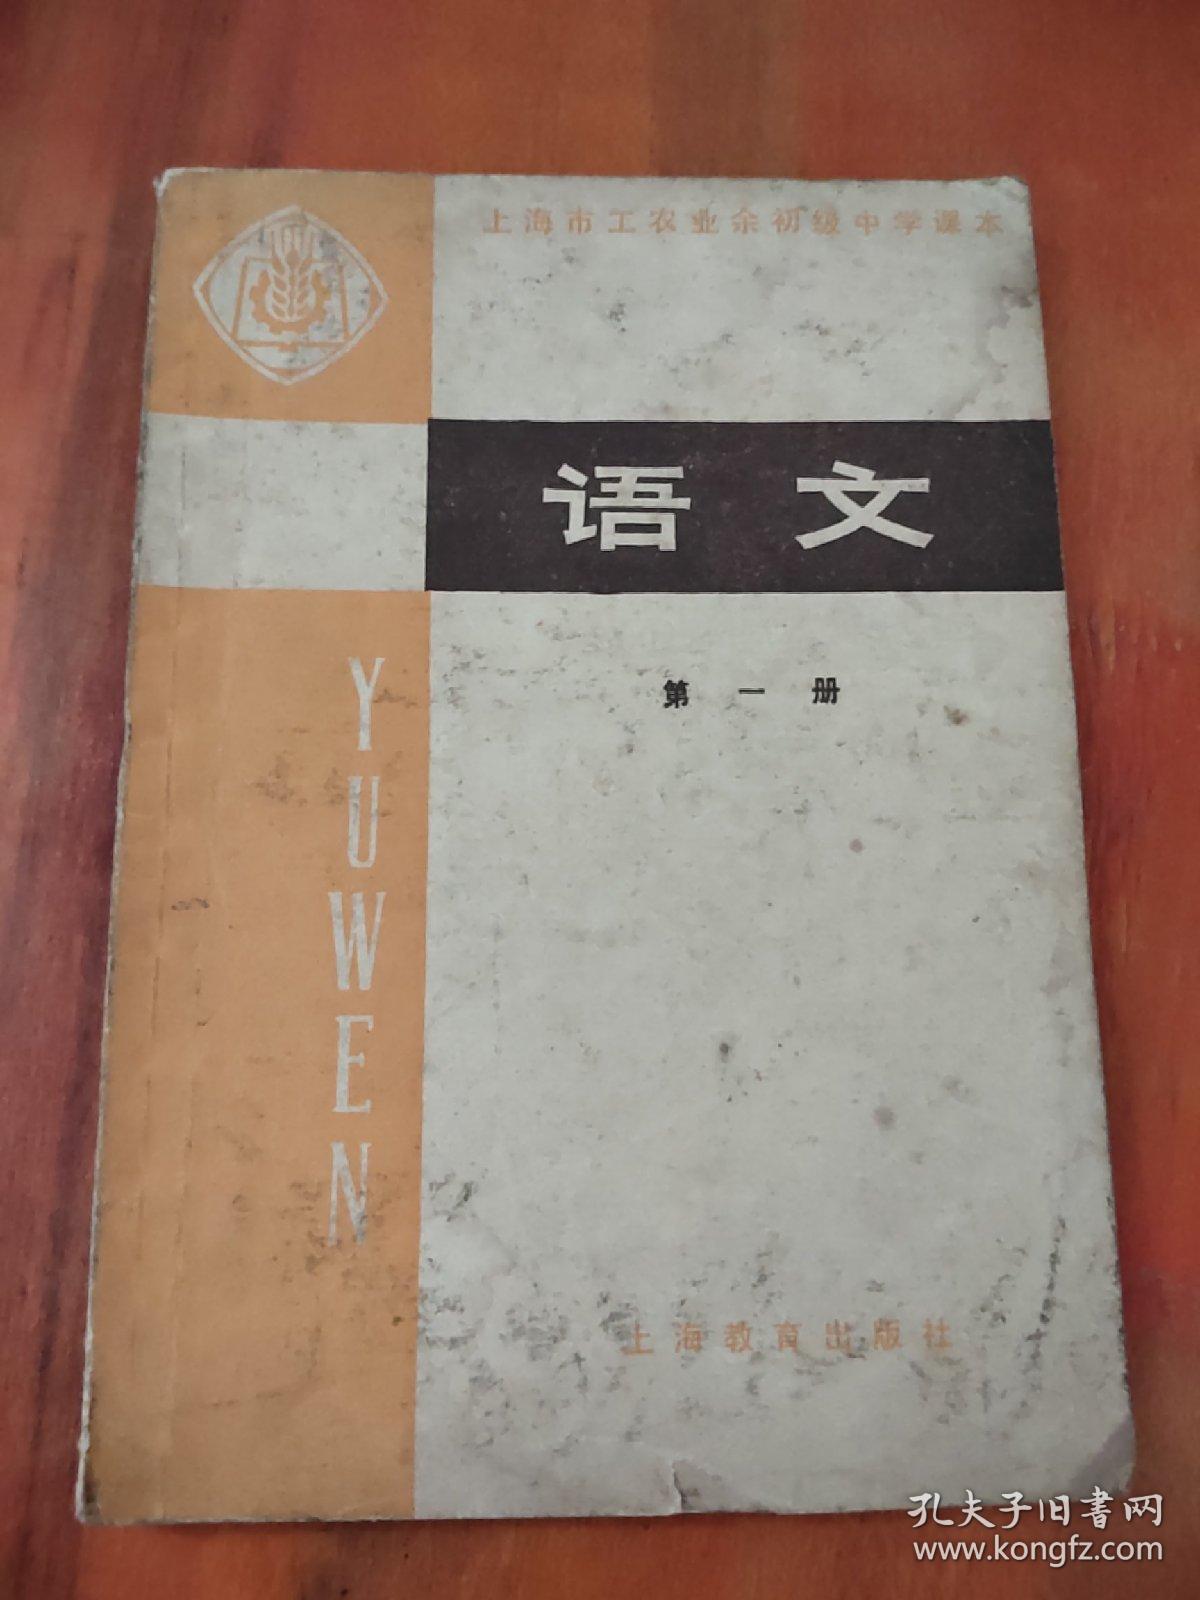 上海市工农业余初级中学课本； 语文（第一册）